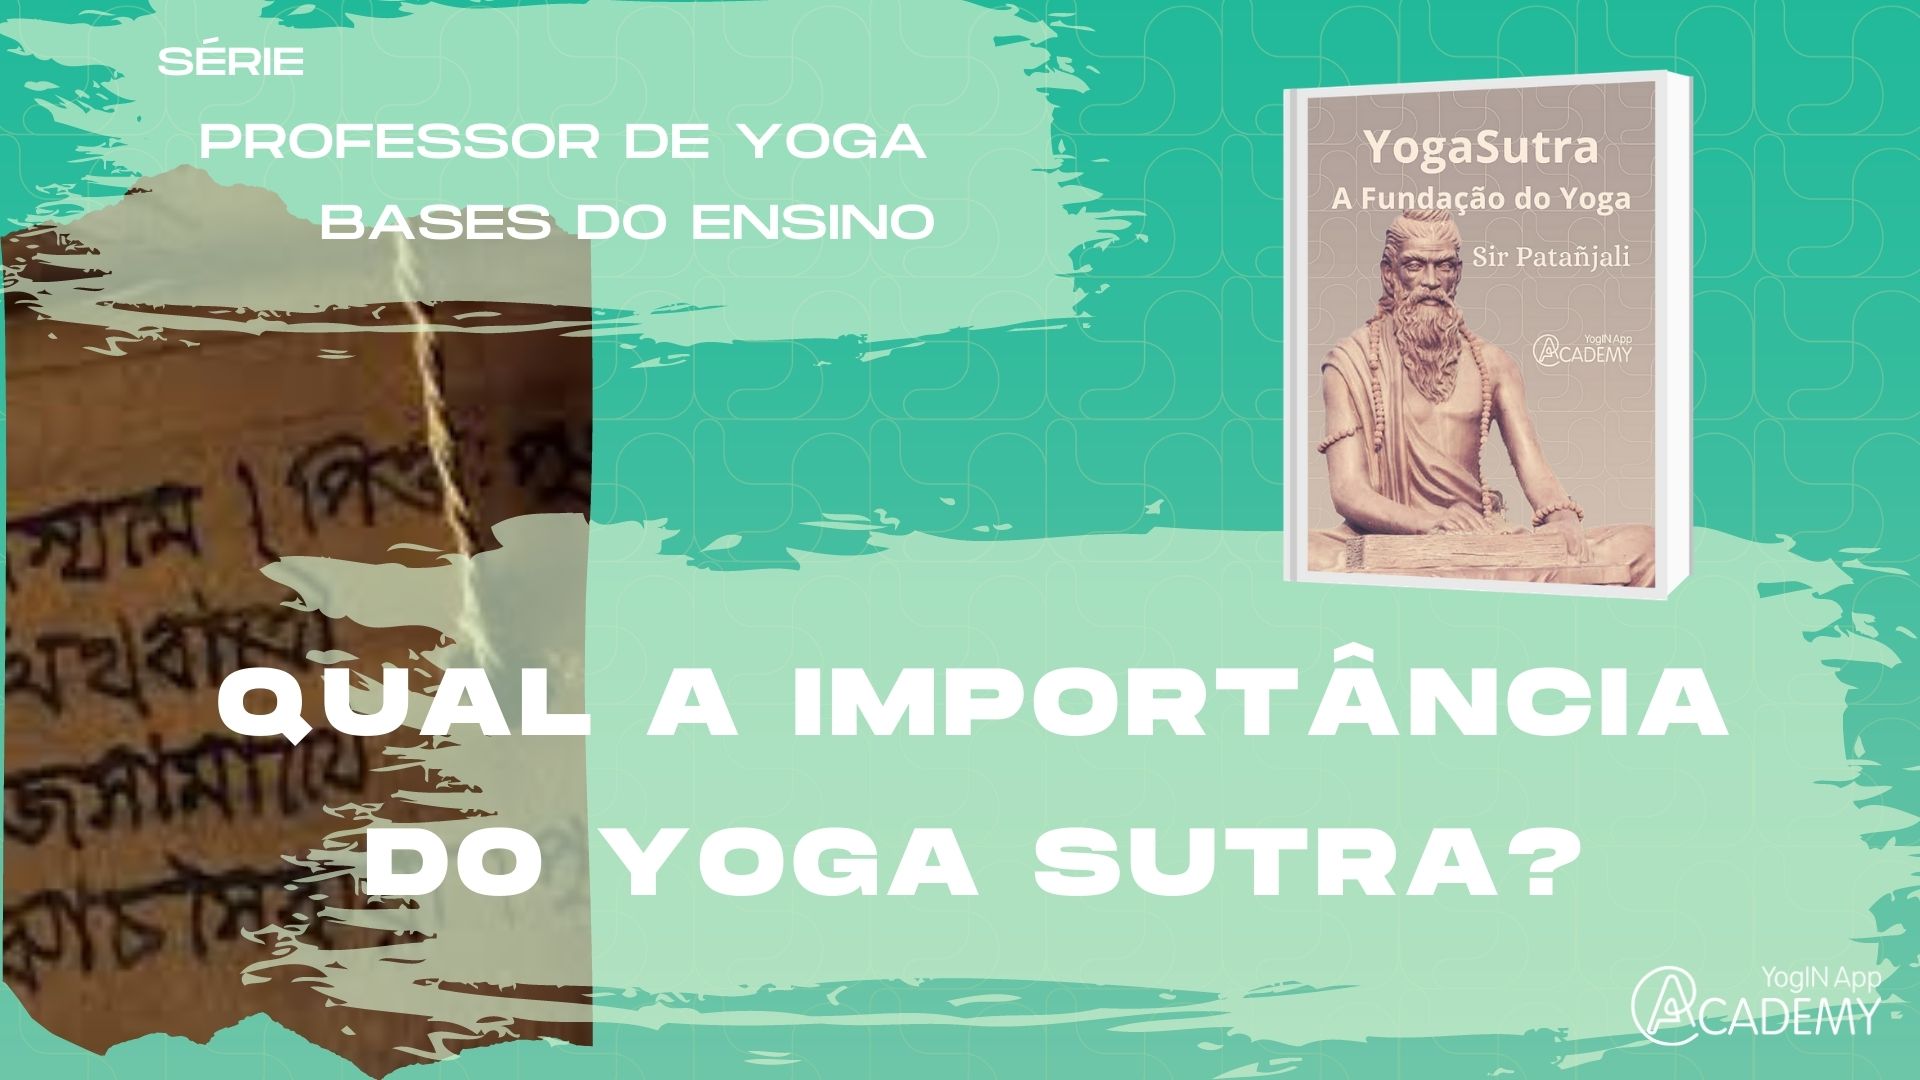 A Importância do Yoga Sutra